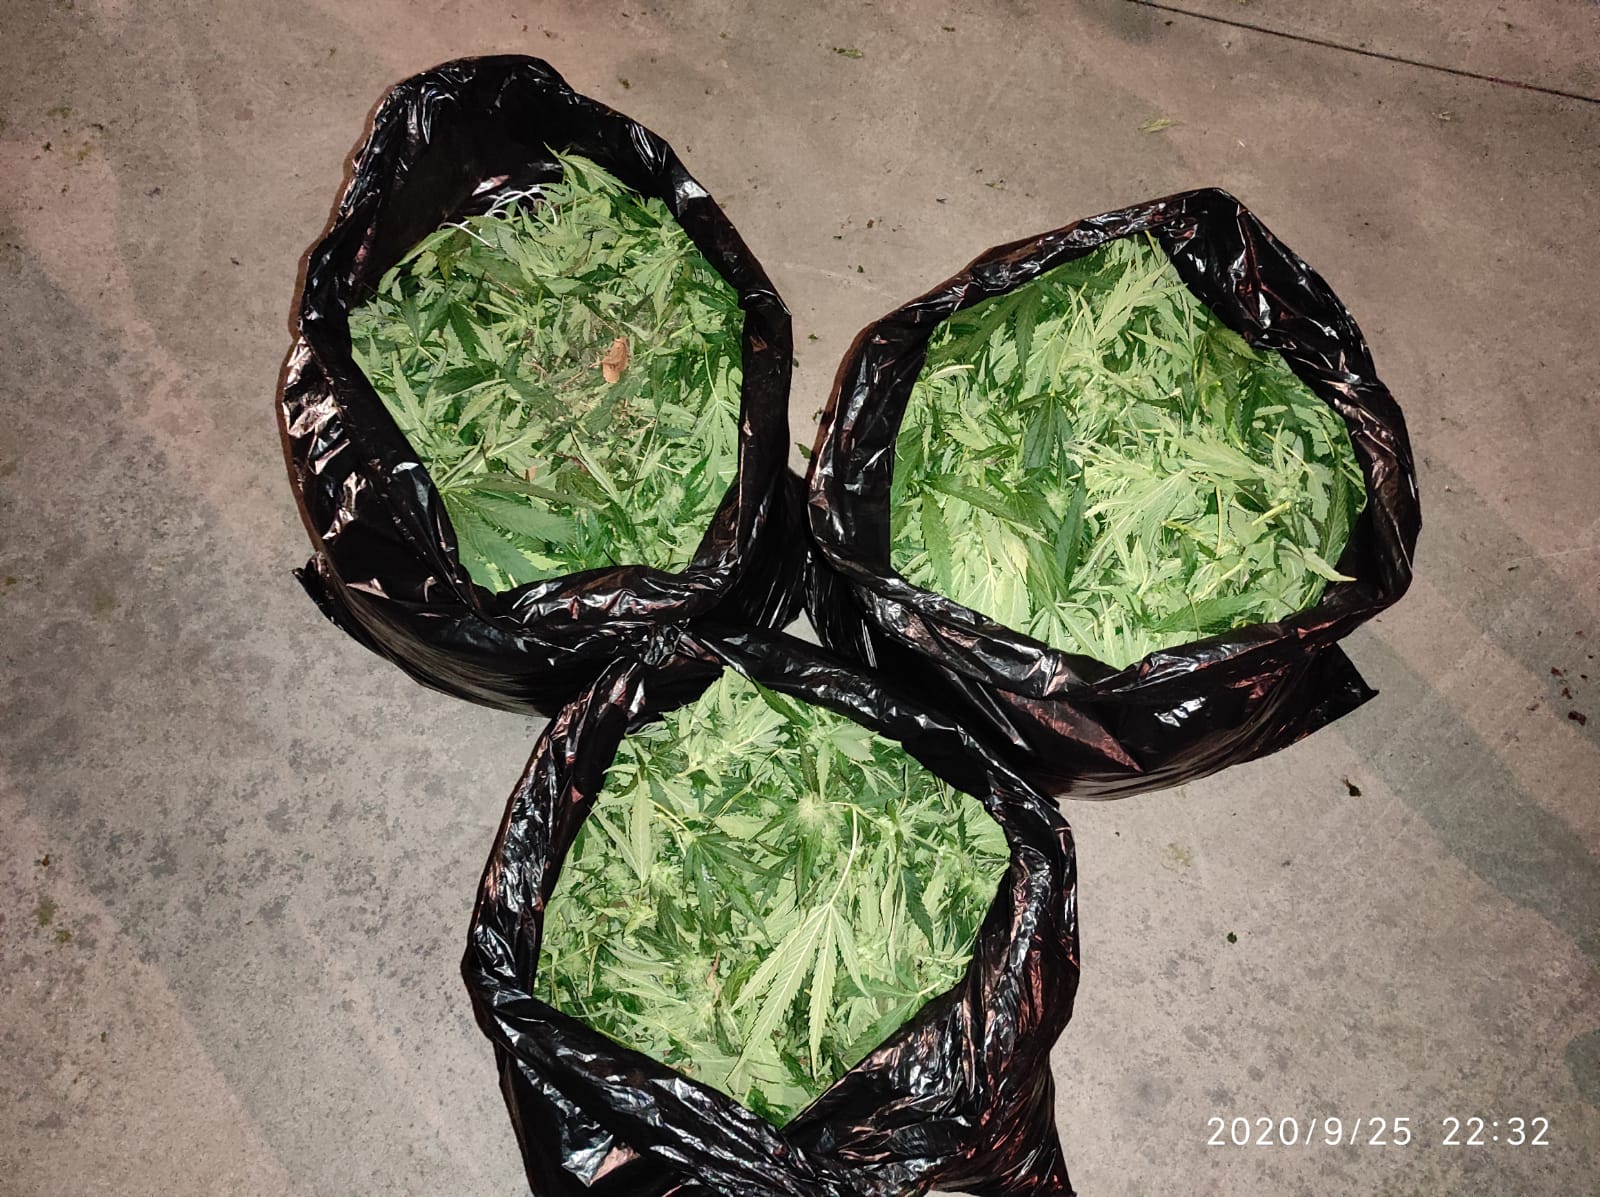 Detenido en Bárcena del Bierzo por cultivar ocho plantas de marihuana en un invernadero